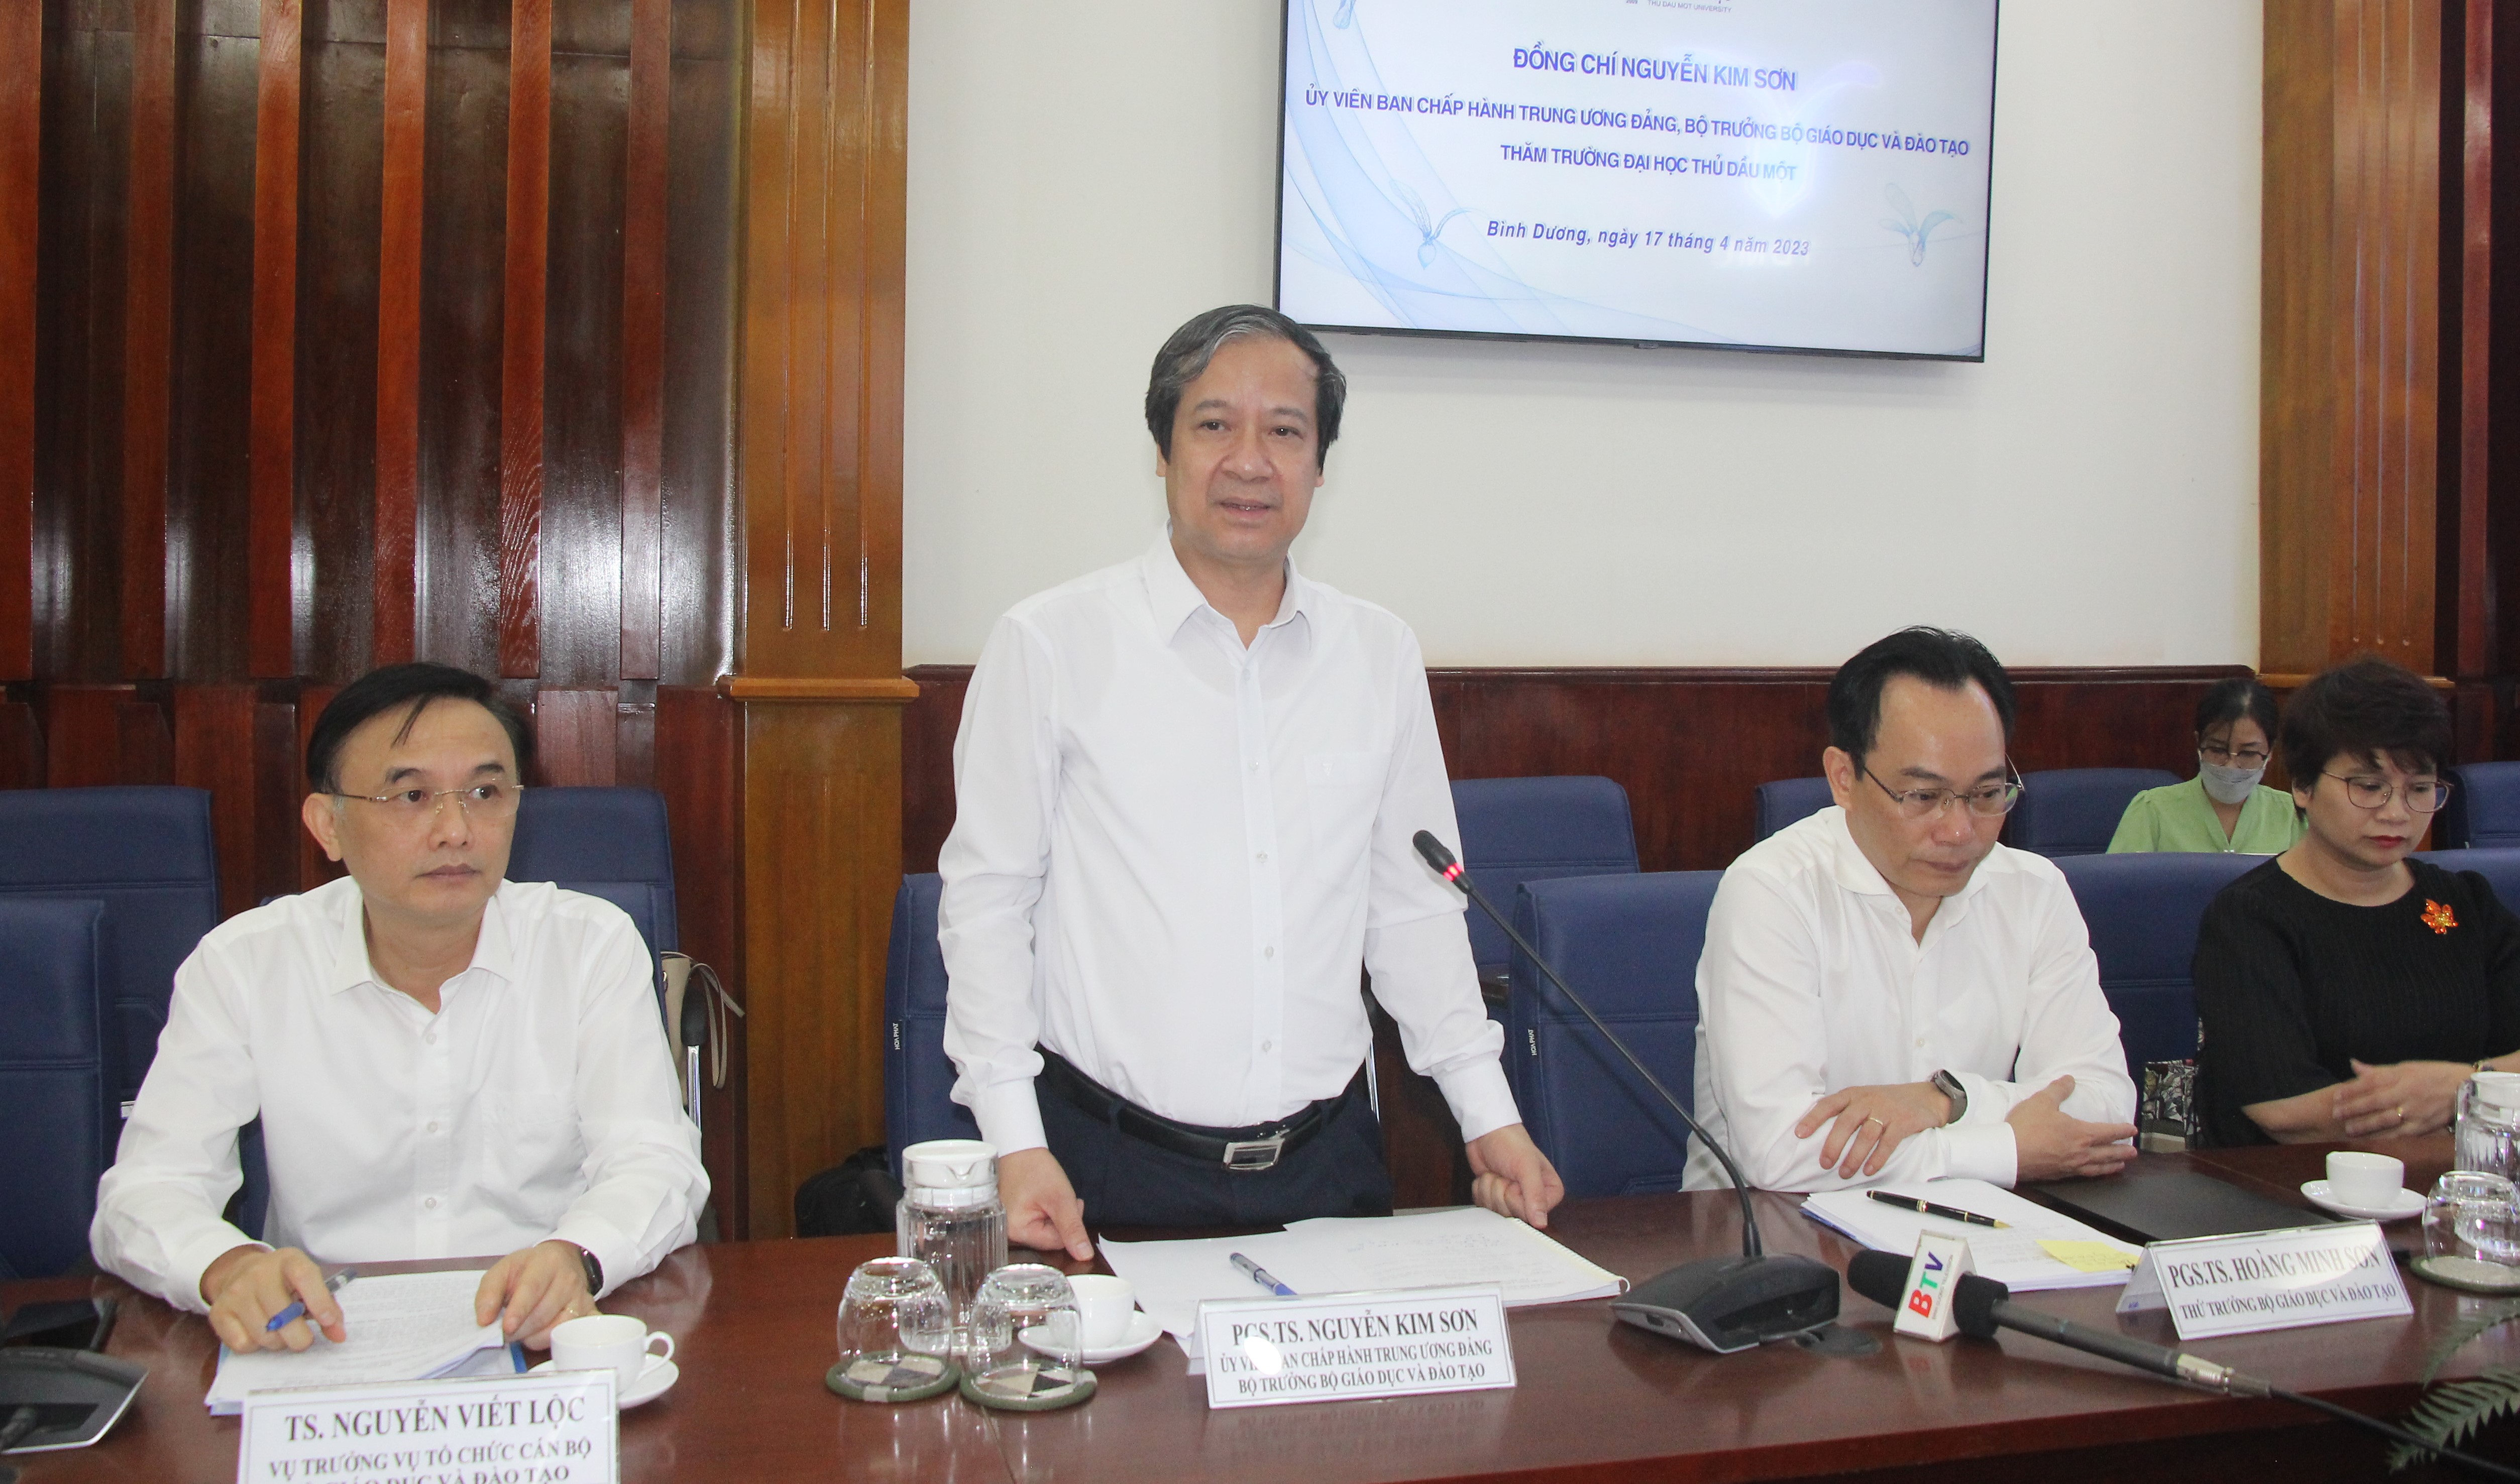 Bộ trưởng Nguyễn Kim Sơn làm việc với 2 trường ĐH tại Bình Dương ảnh 3